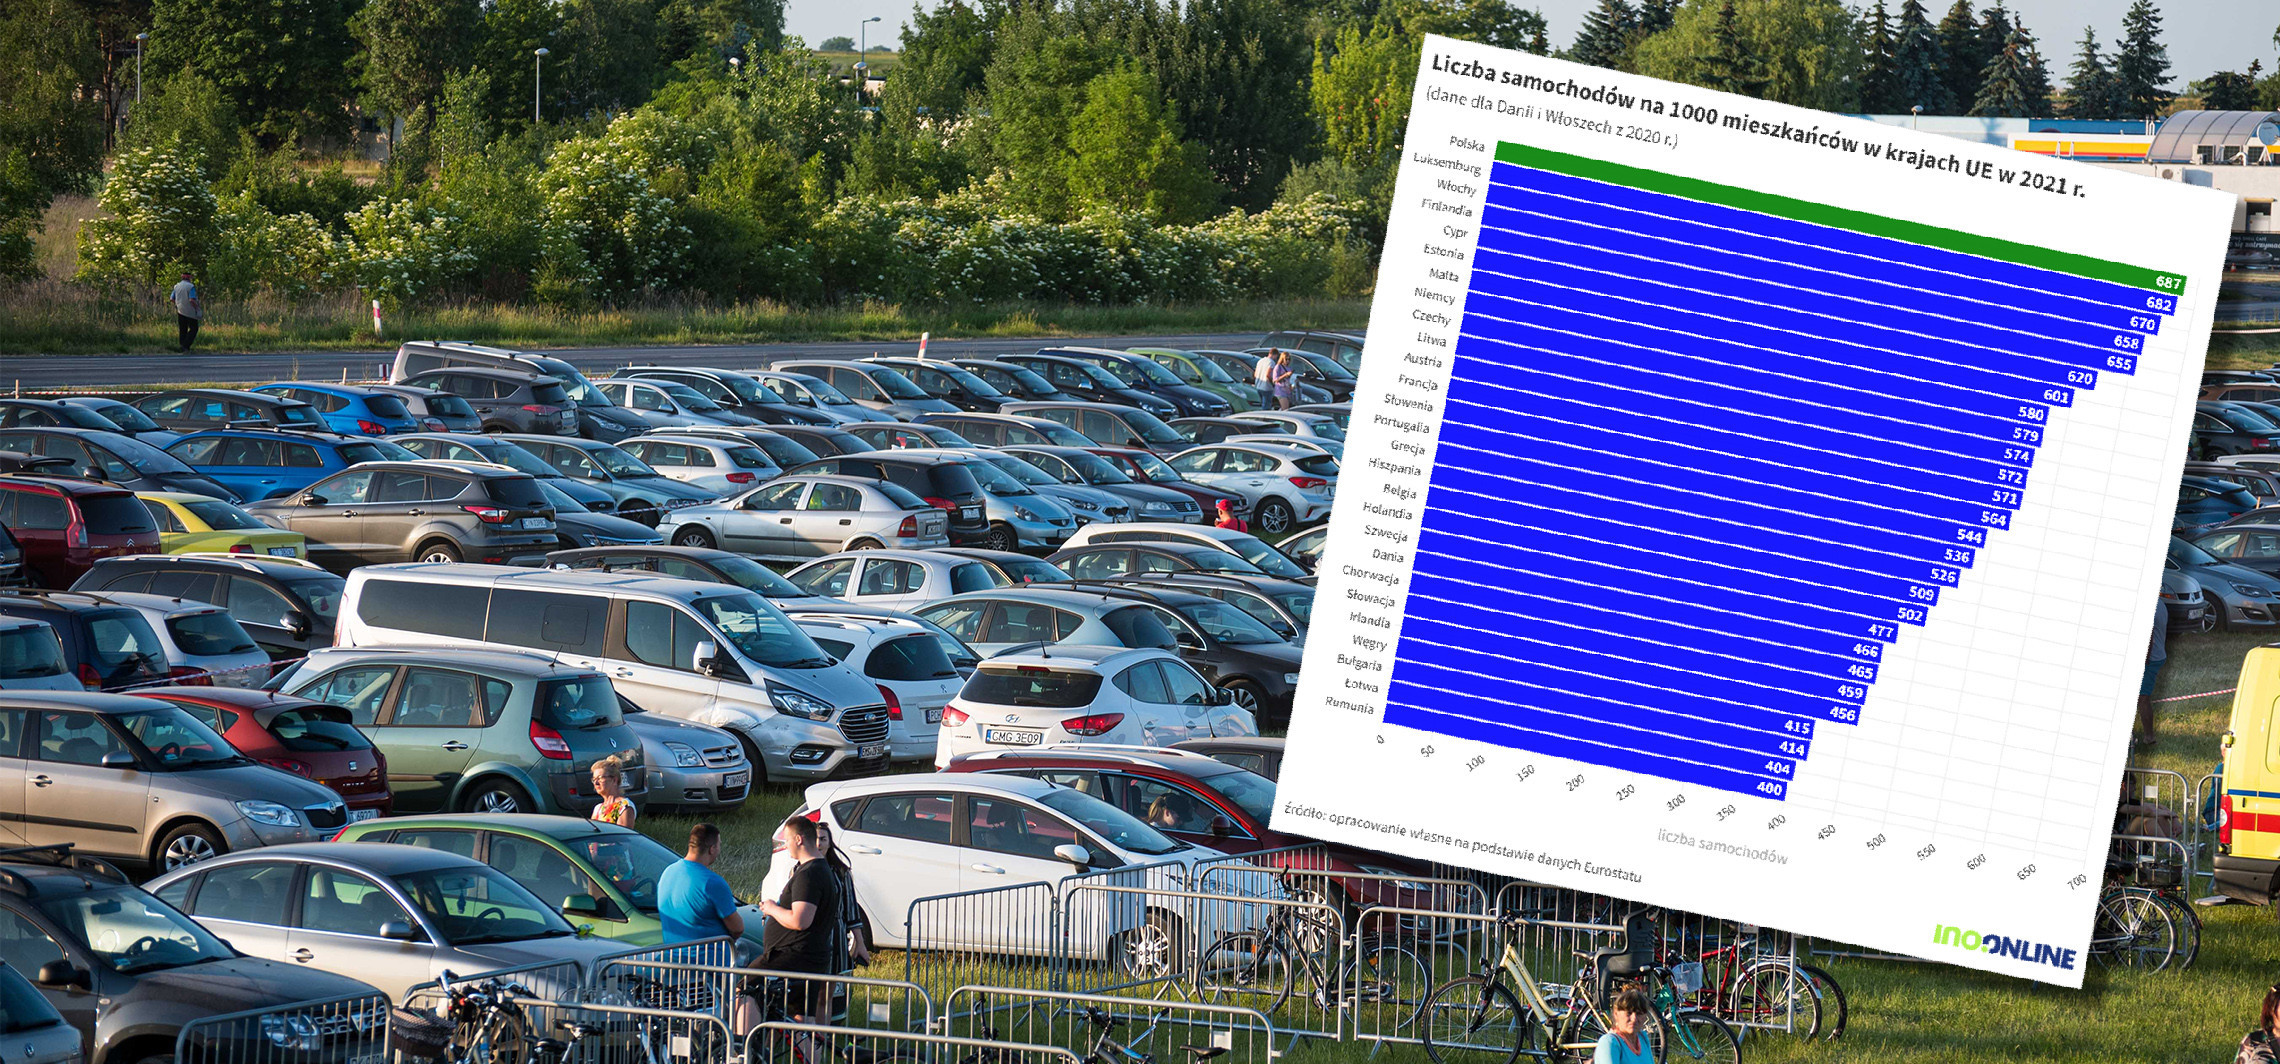 Moto wykres na niedzielę: mamy najwięcej aut w UE na 1000 mieszkańców